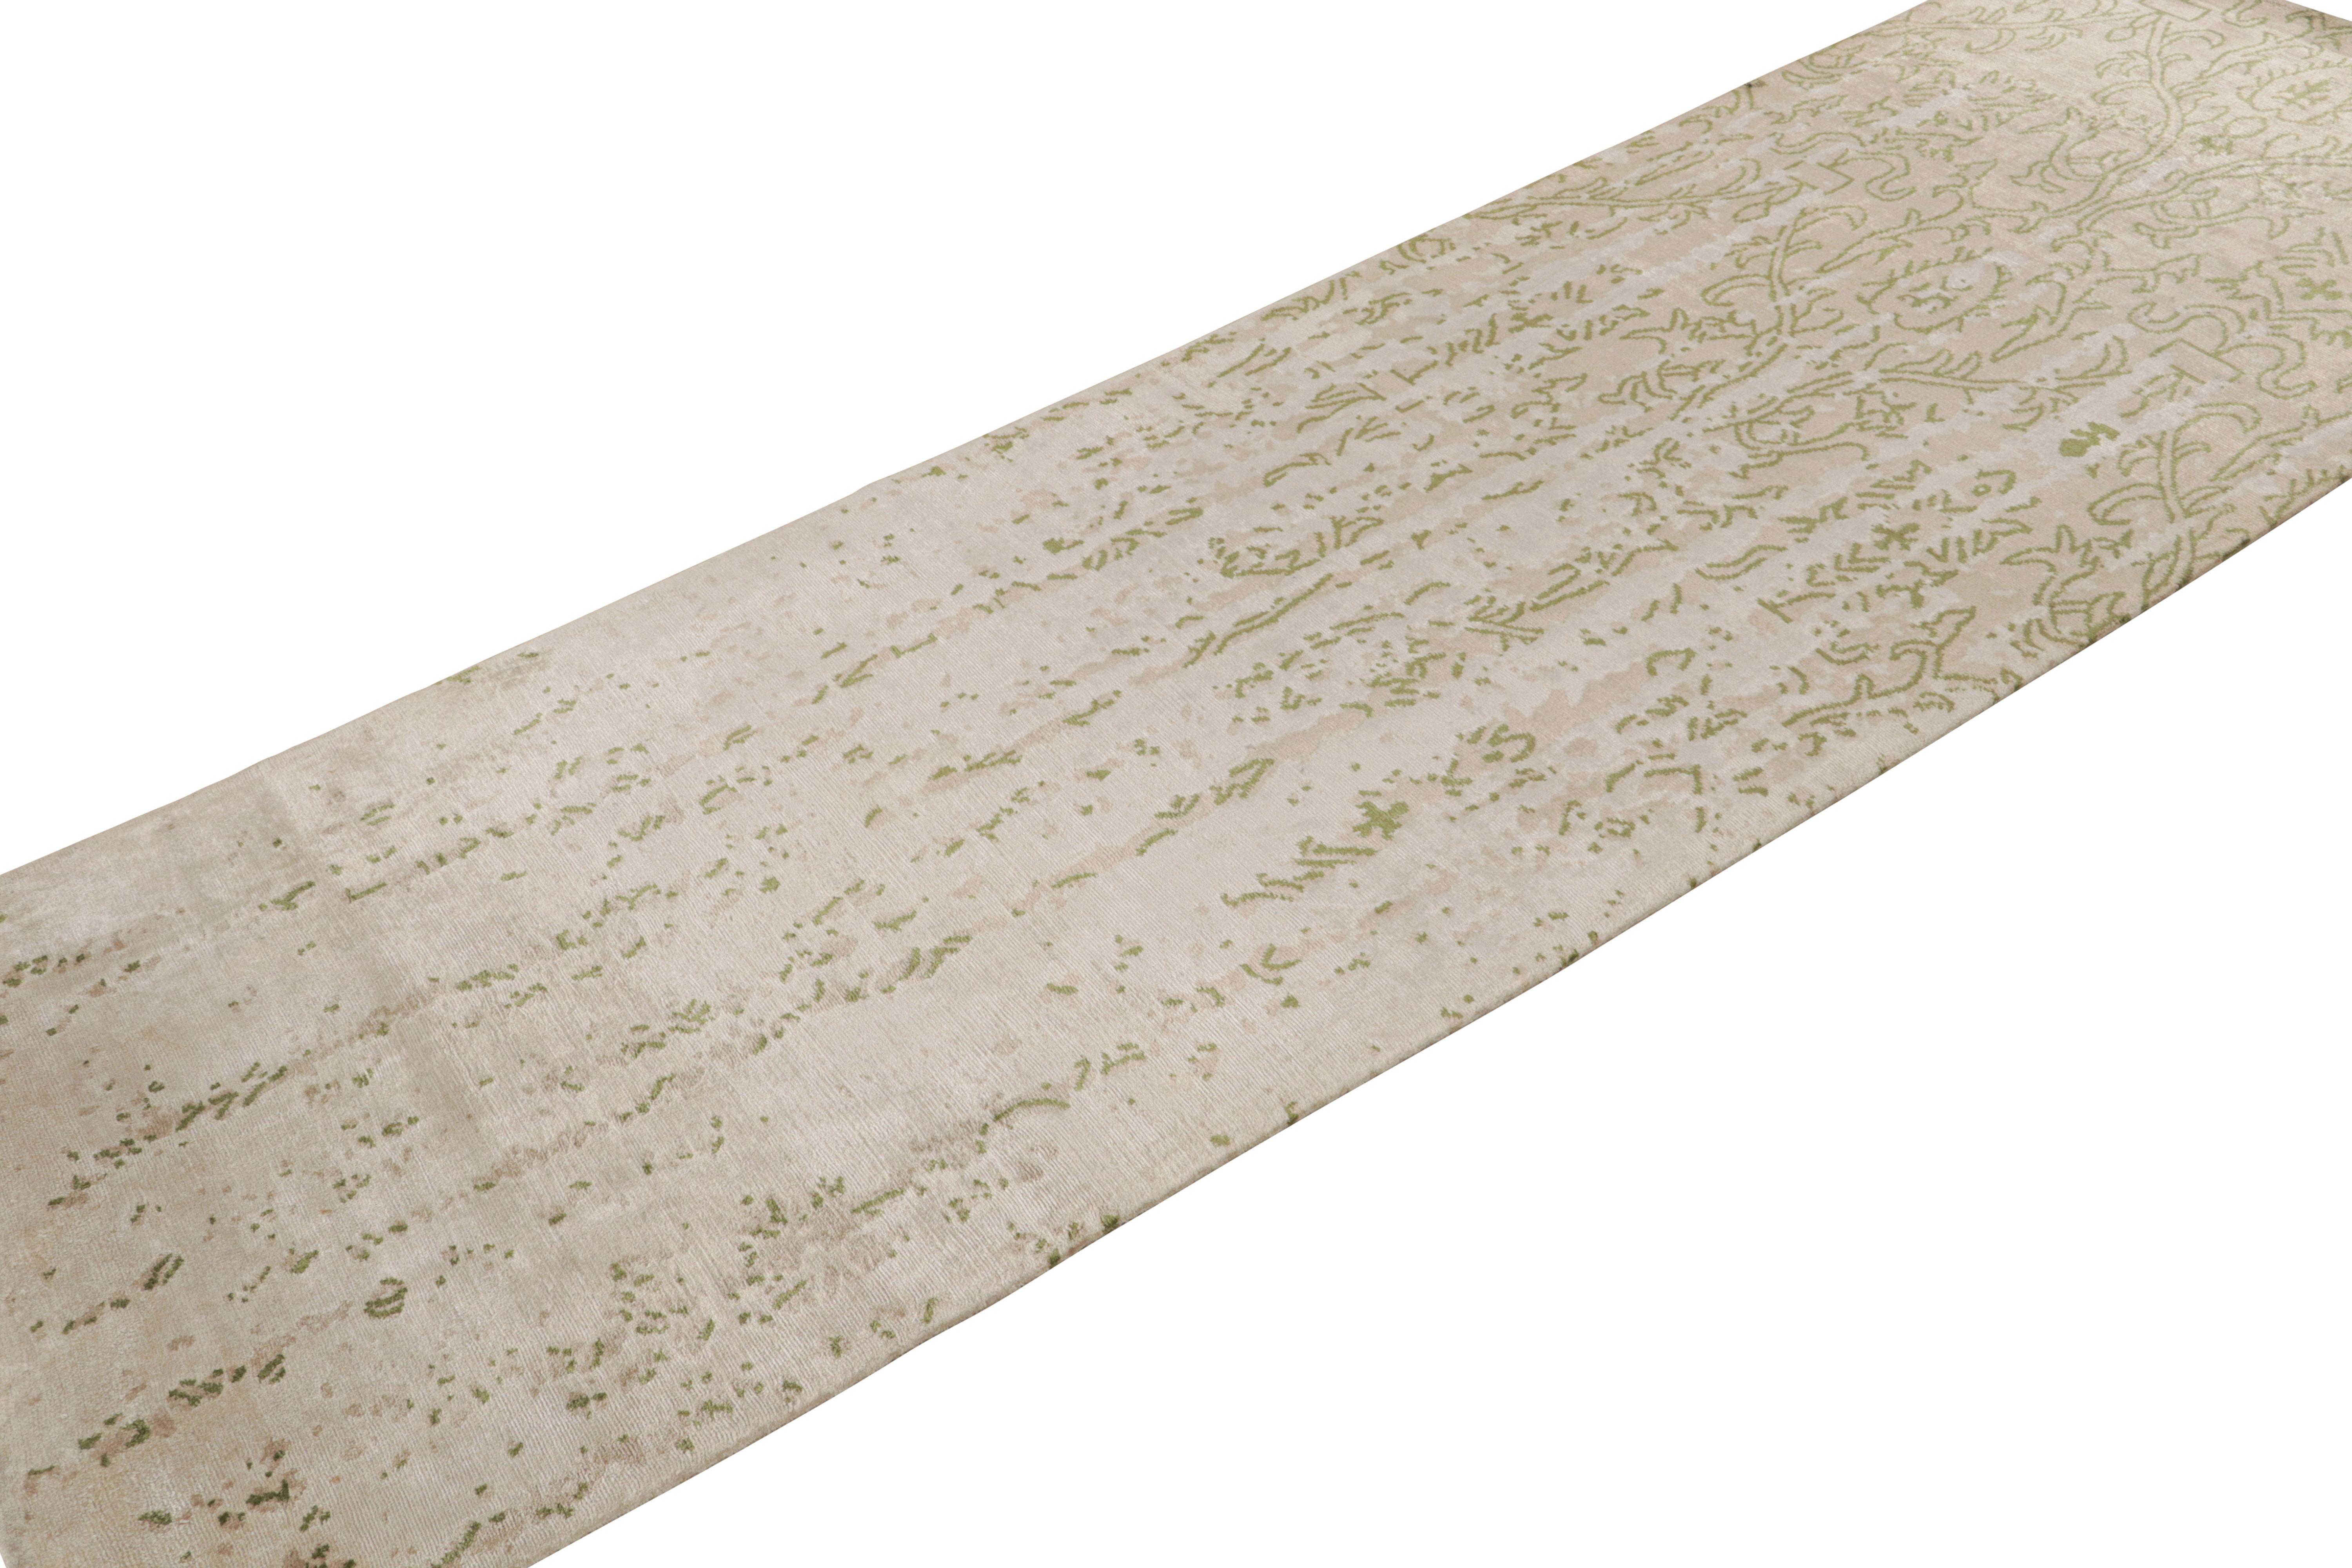 Fabriqué en soie nouée à la main, ce chemin de table contemporain est l'un des derniers ajouts célèbres à la collection New & Modern de Rug & Kilim. Il fait partie d'un triplet de motifs distinctifs qui peuvent être vendus tels quels ou reliés pour